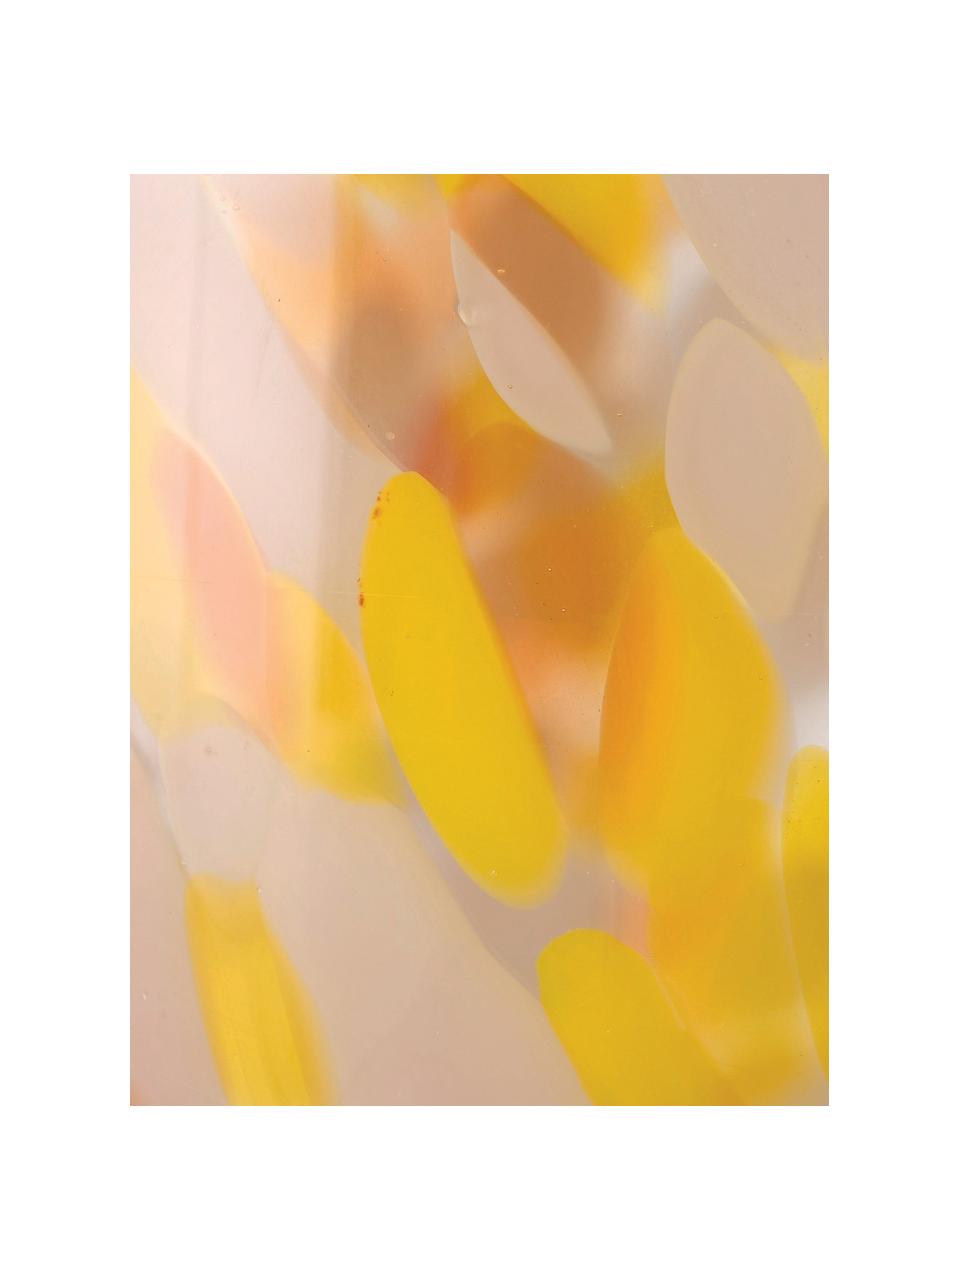 Glas-Windlicht Lulea mit Tupfen-Muster, Glas, Gelb, Brauntöne, Ø 15 x H 17 cm